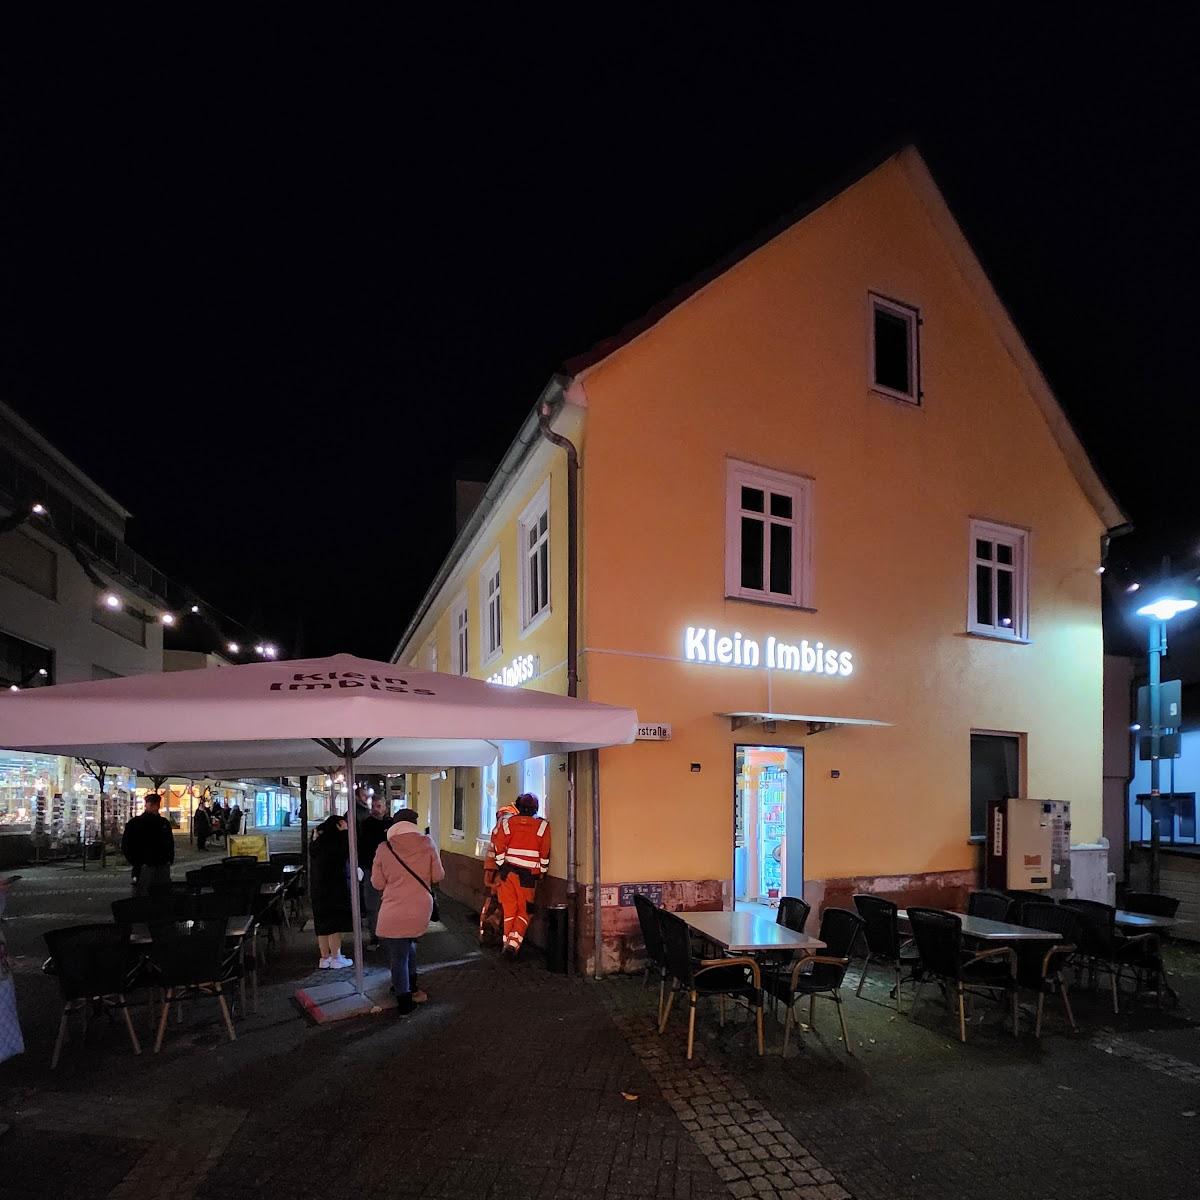 Restaurant "Klein Imbiss" in Kirchhain